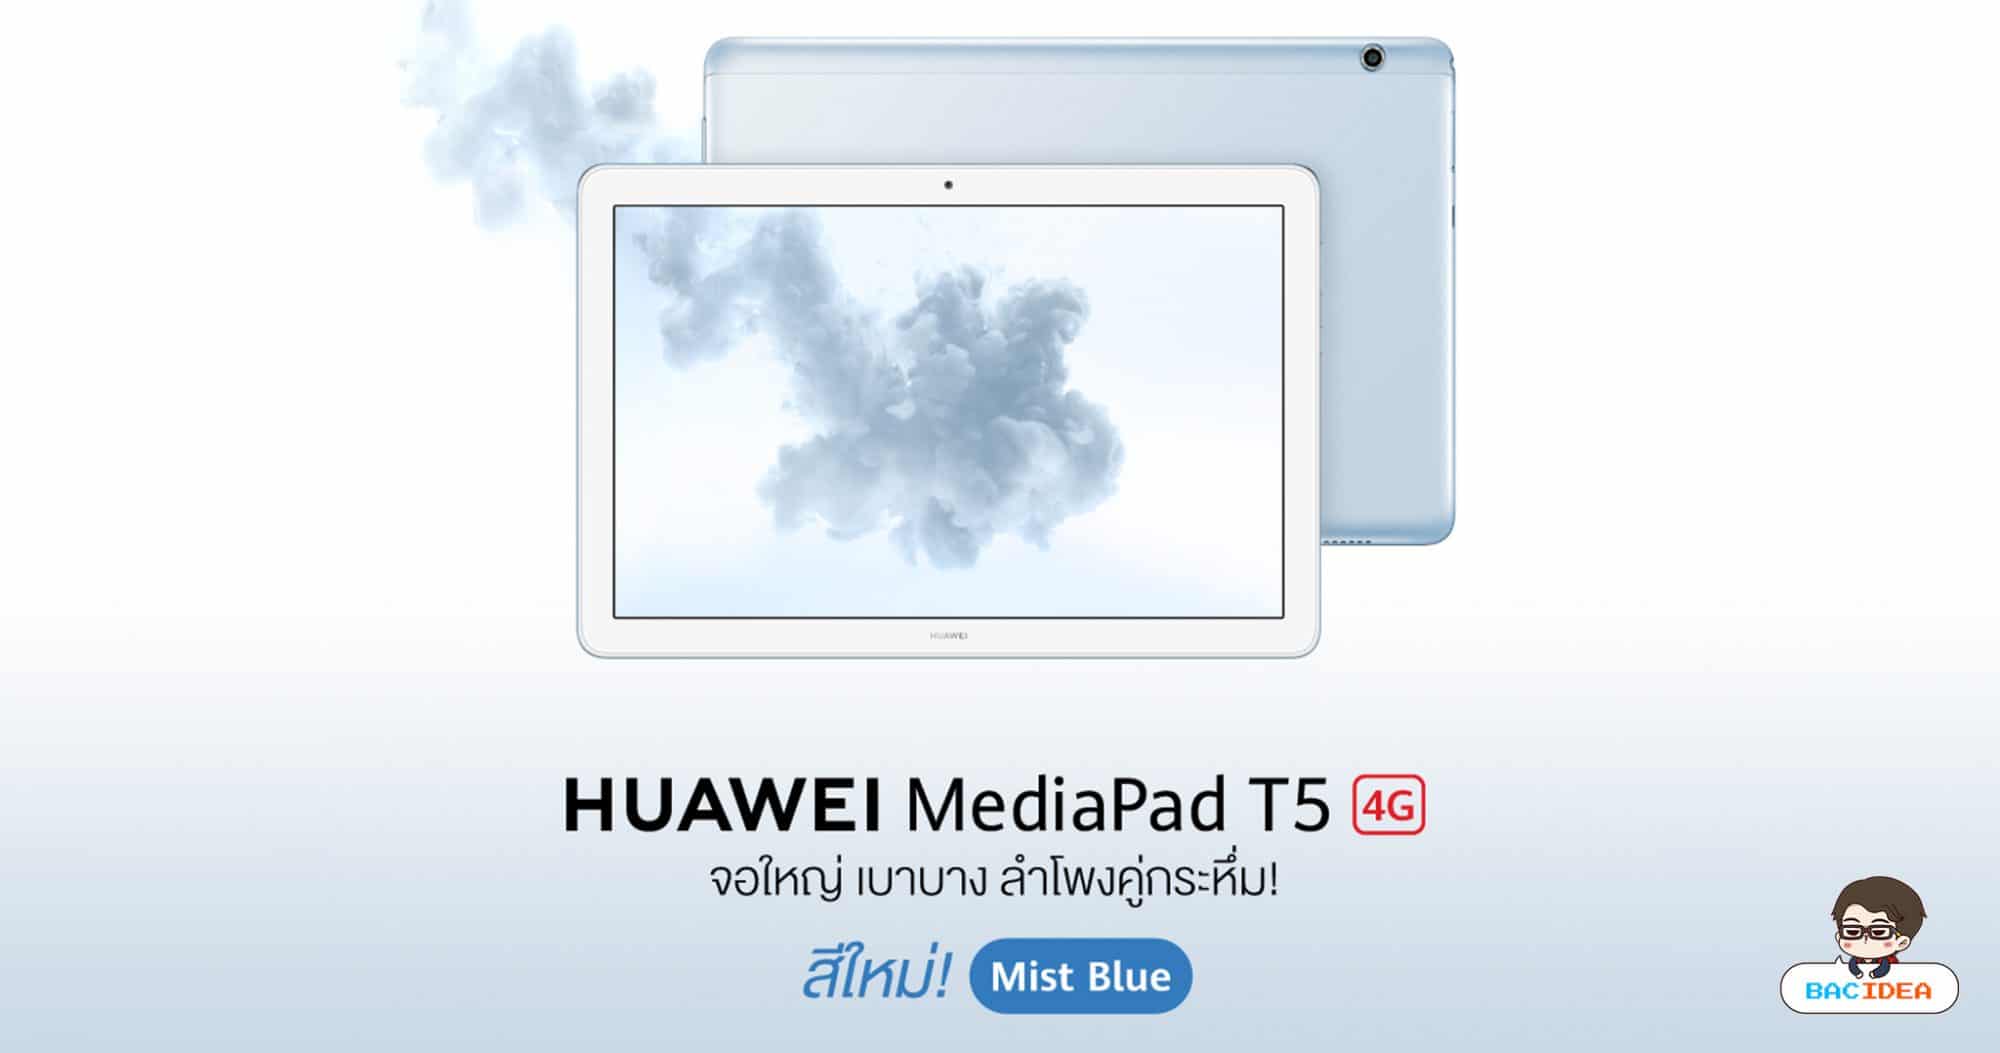 HUAWEI MediaPad T5 10" แท็บเล็ตจอ Full HD 10.1 นิ้ว รุ่นยอดนิยมมาพร้อมสีใหม่ Mist Blue 1